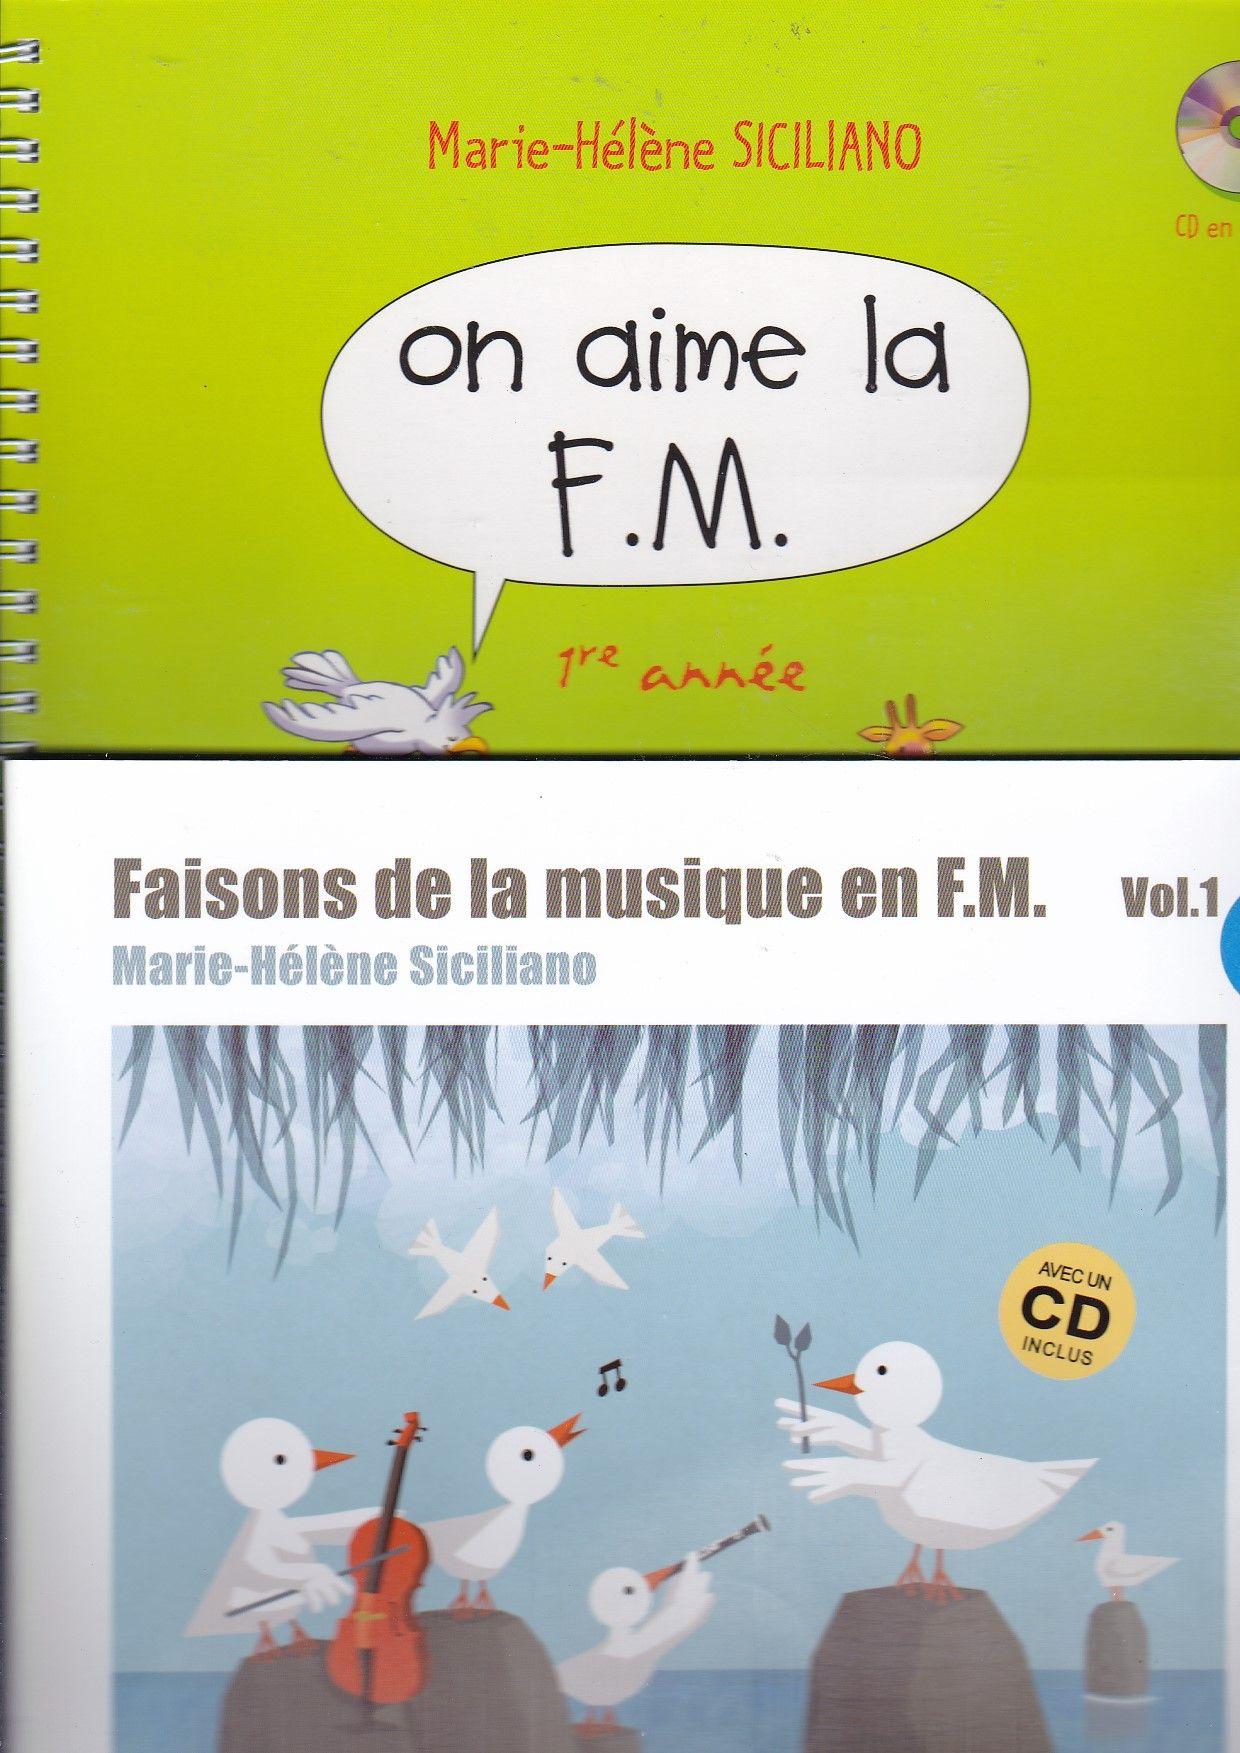 Lot 2 Livres Partitions Marie-Hélène Siciliano - on aime la FM vol 1 &  Faisons De La Musique En F.M. Volume 1 (avec cd) - h cube